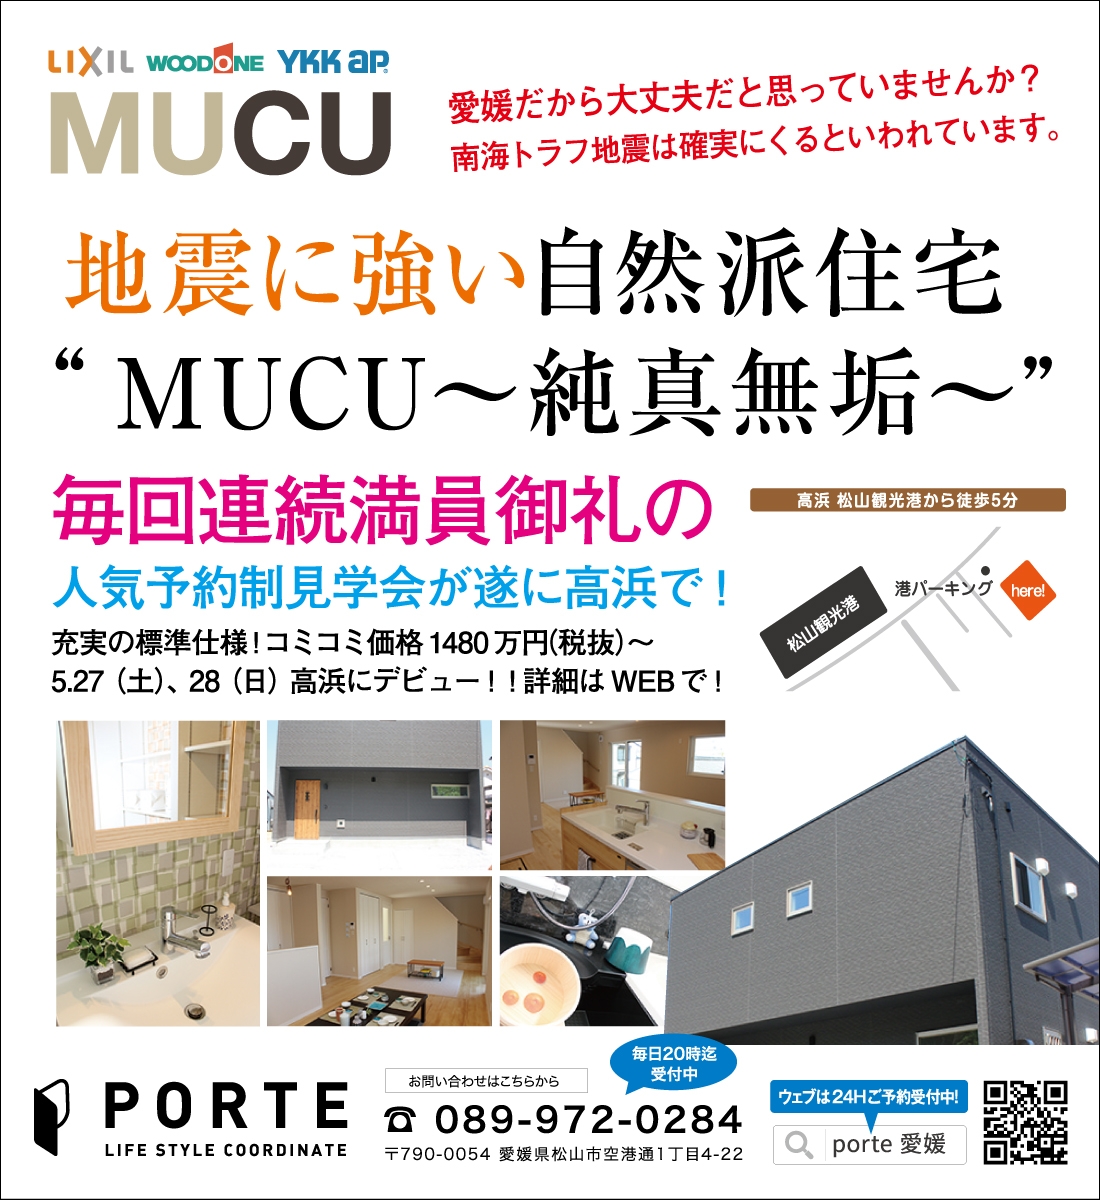 MUCU高浜モデル見学会  5.27(土)、28(日)